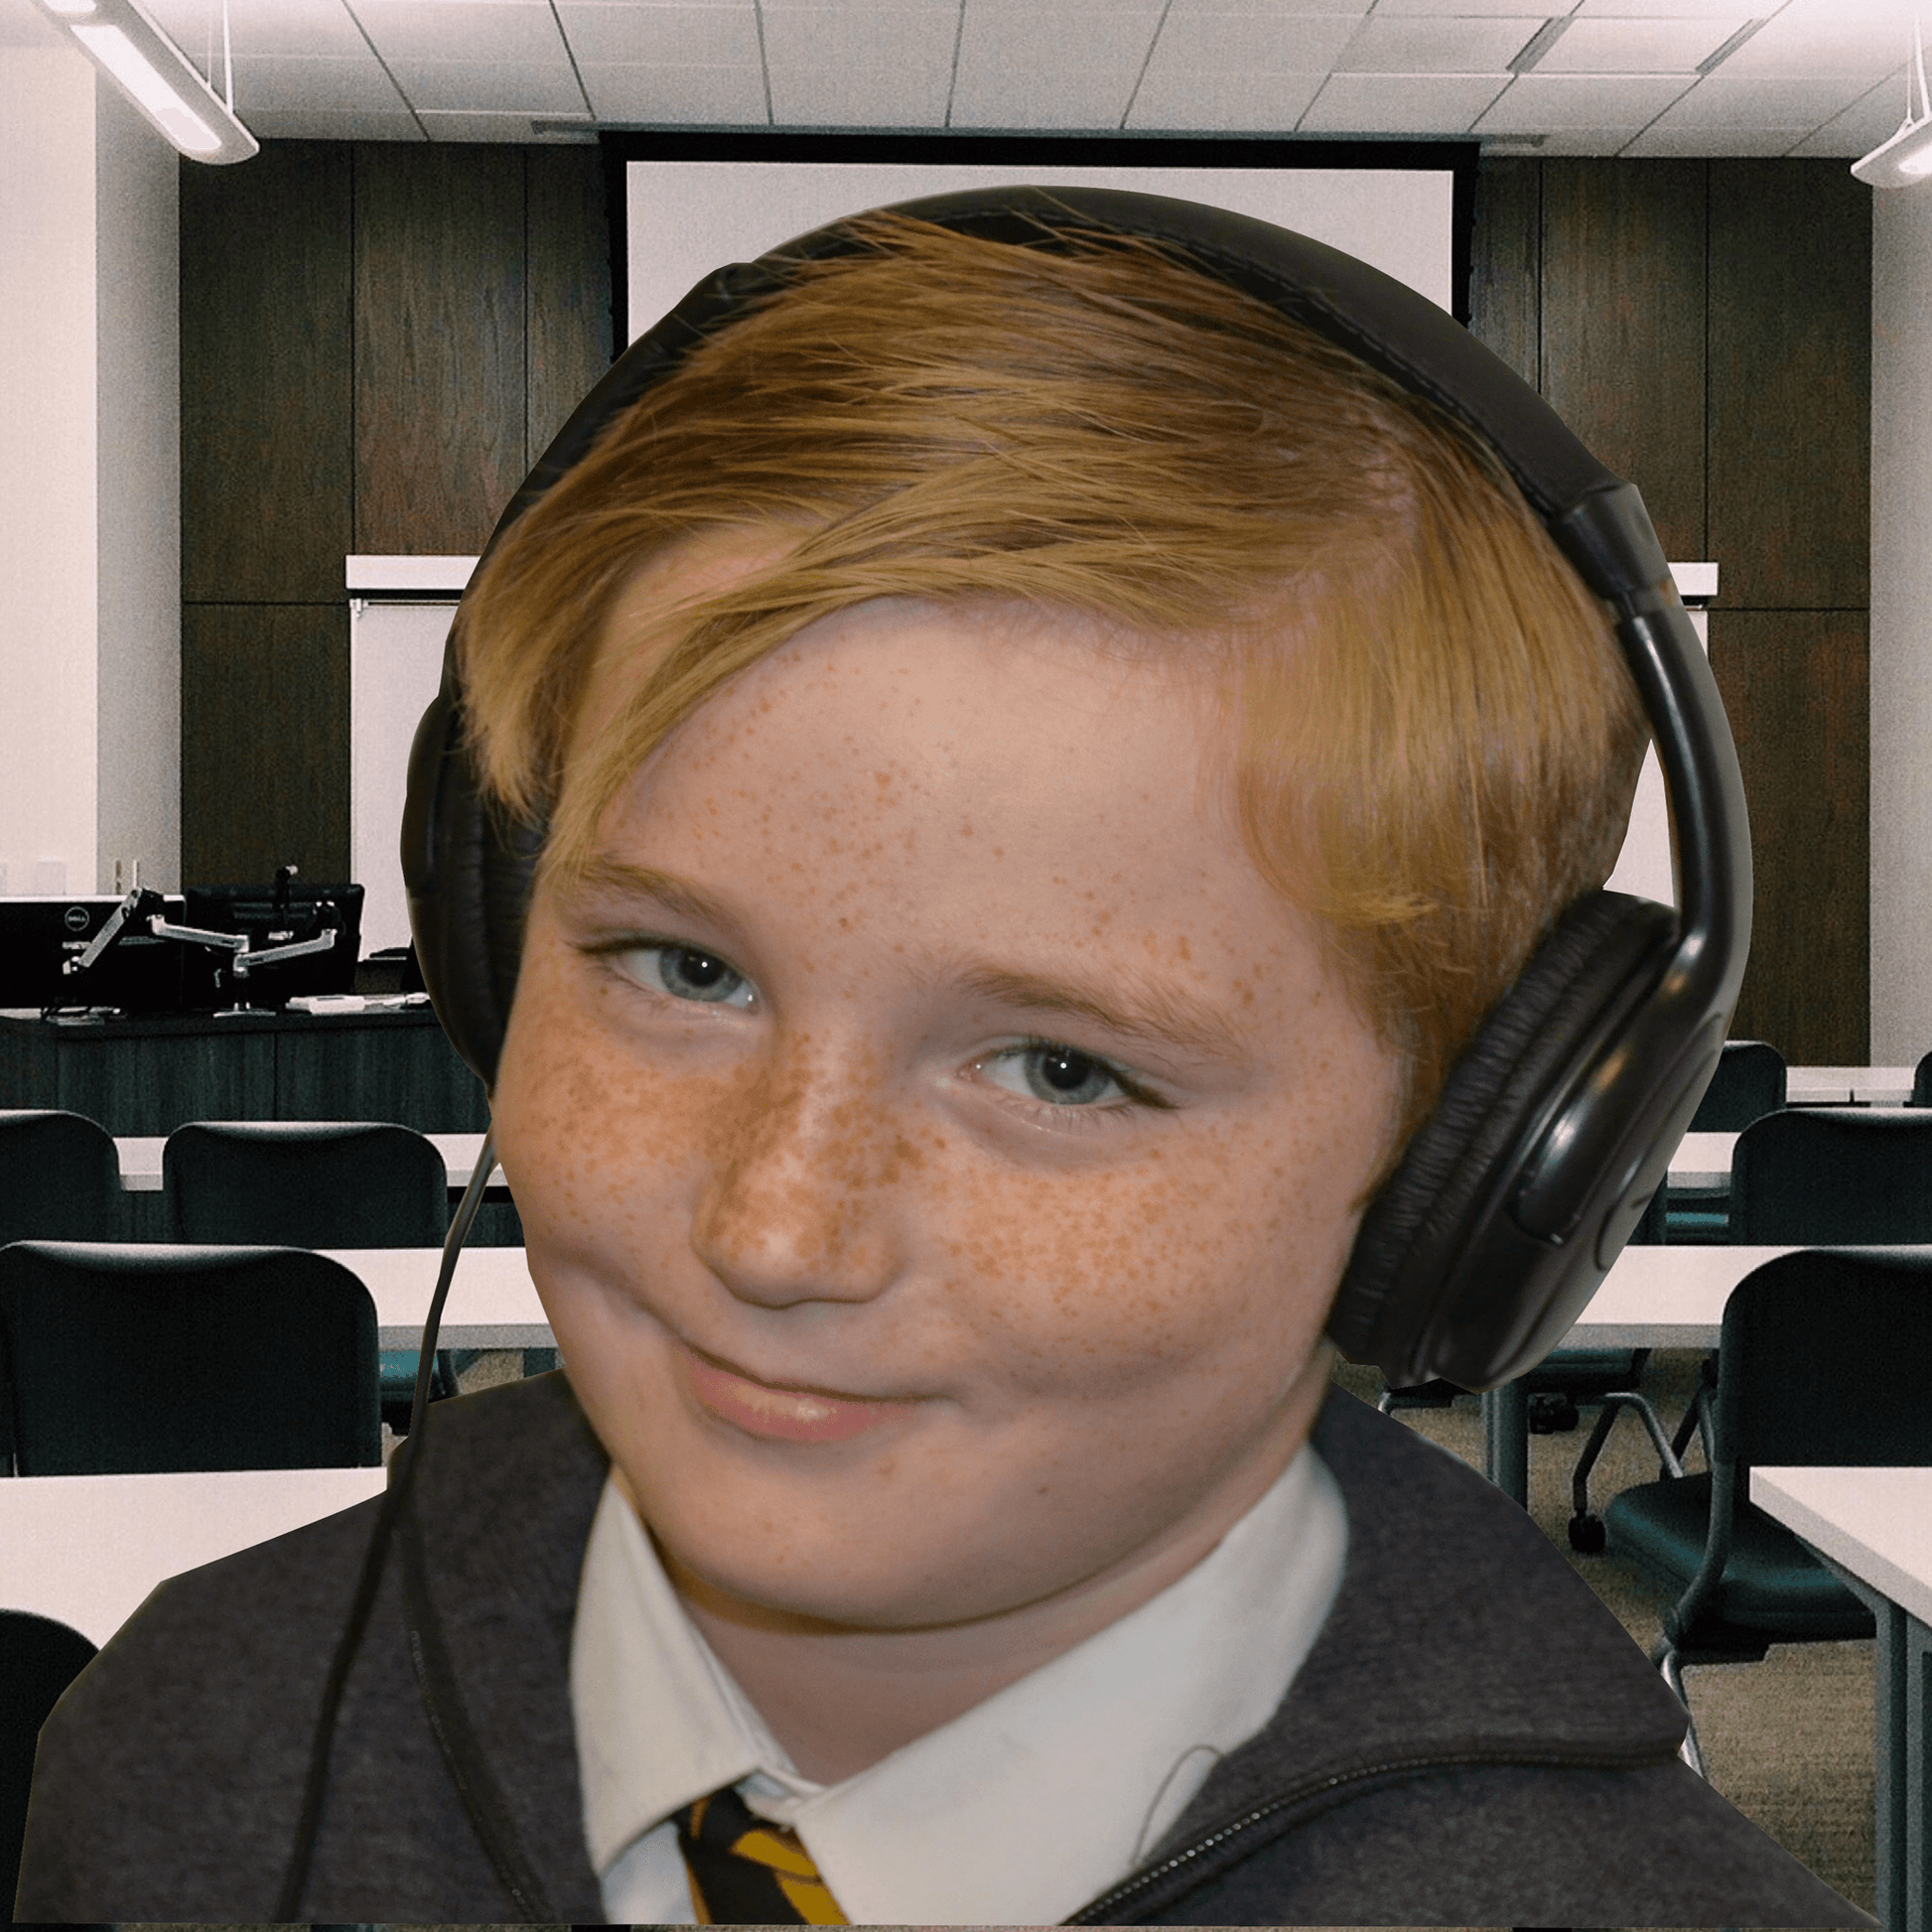 boy wearing headphones